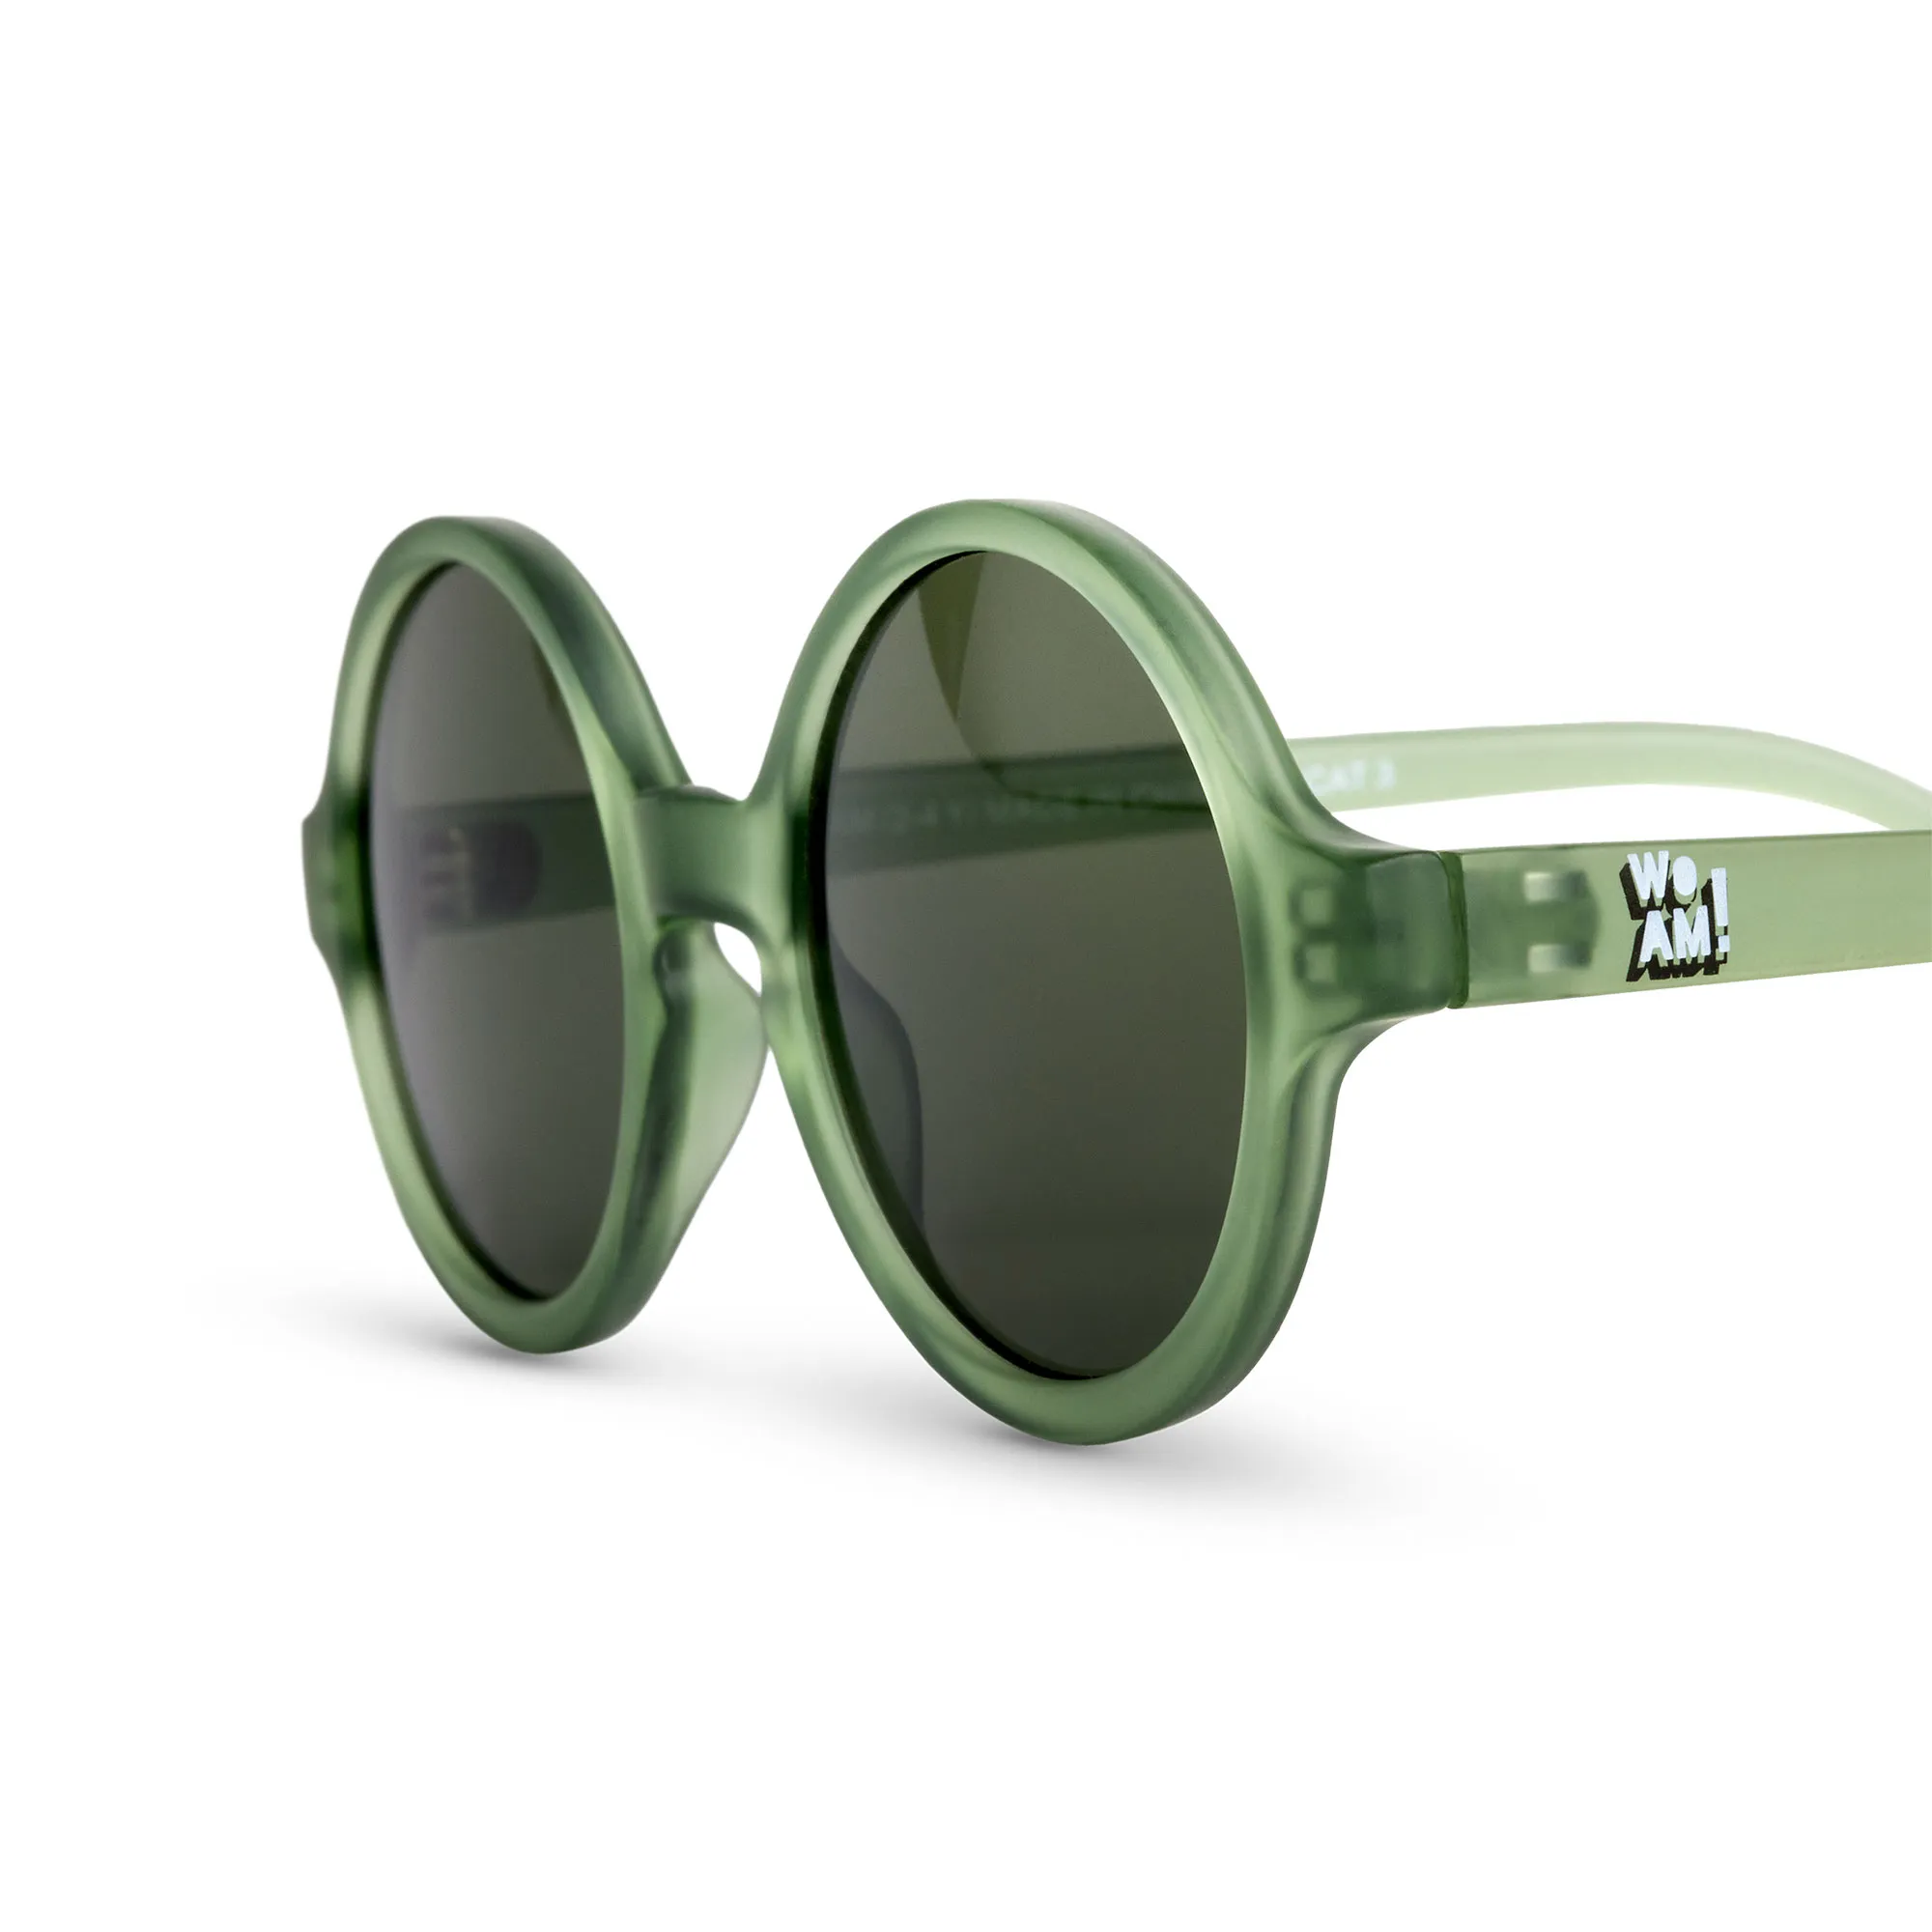 WOAM slnečné okuliare 4-6 rokov - Bottle Green 1×1 ks, detské slnečné okuliare